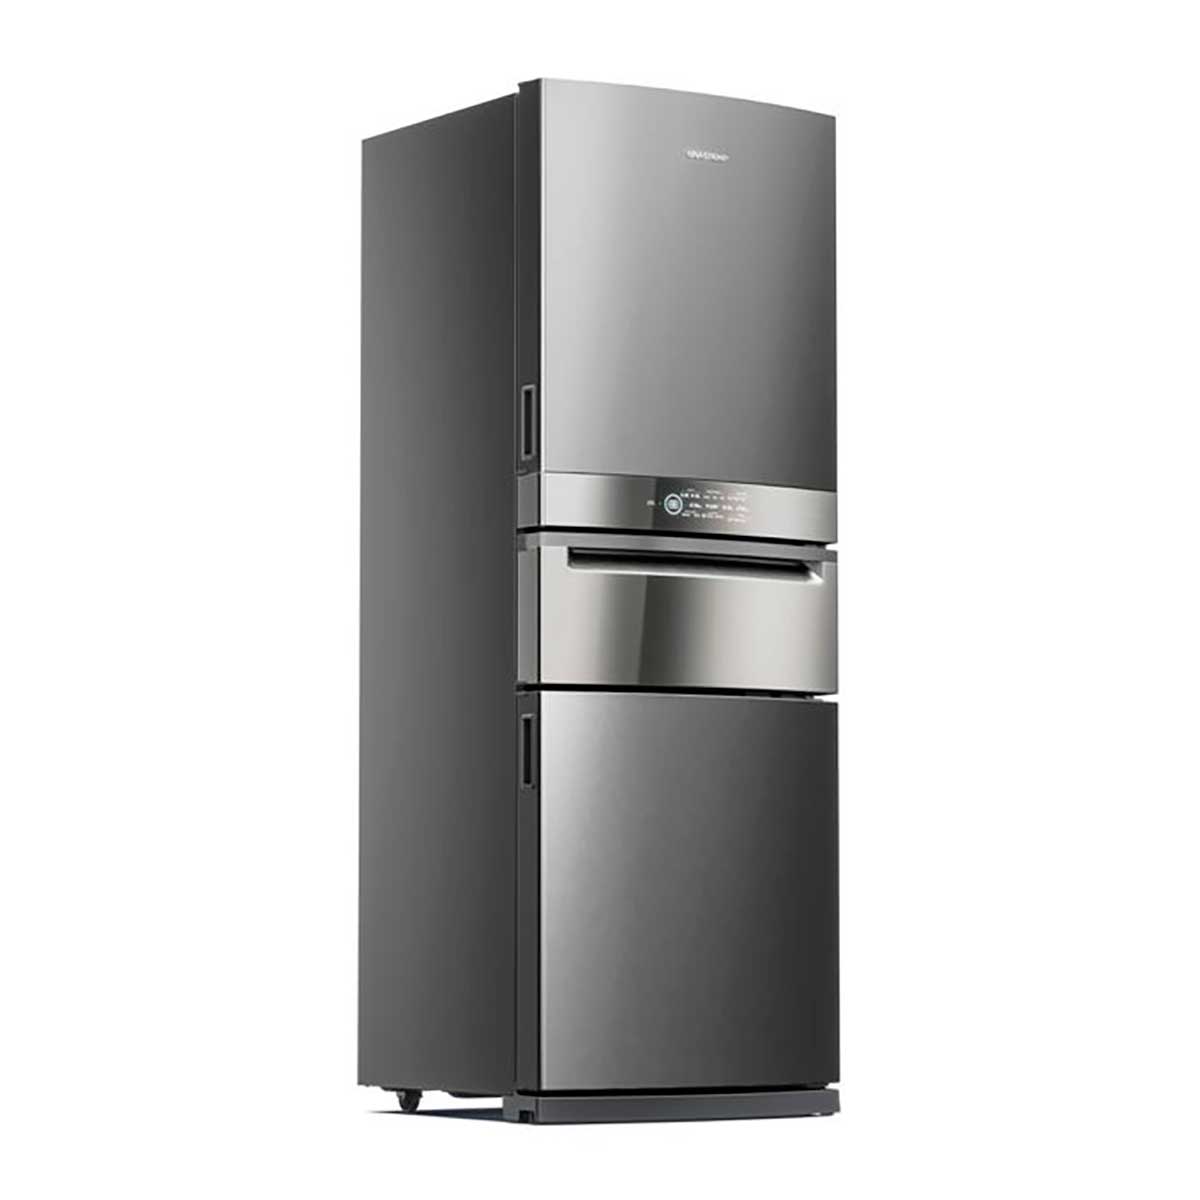 refrigerador-brastemp-frost-free-3-portas-inverse-bry59bk-419-l-inox-220v-2.jpg